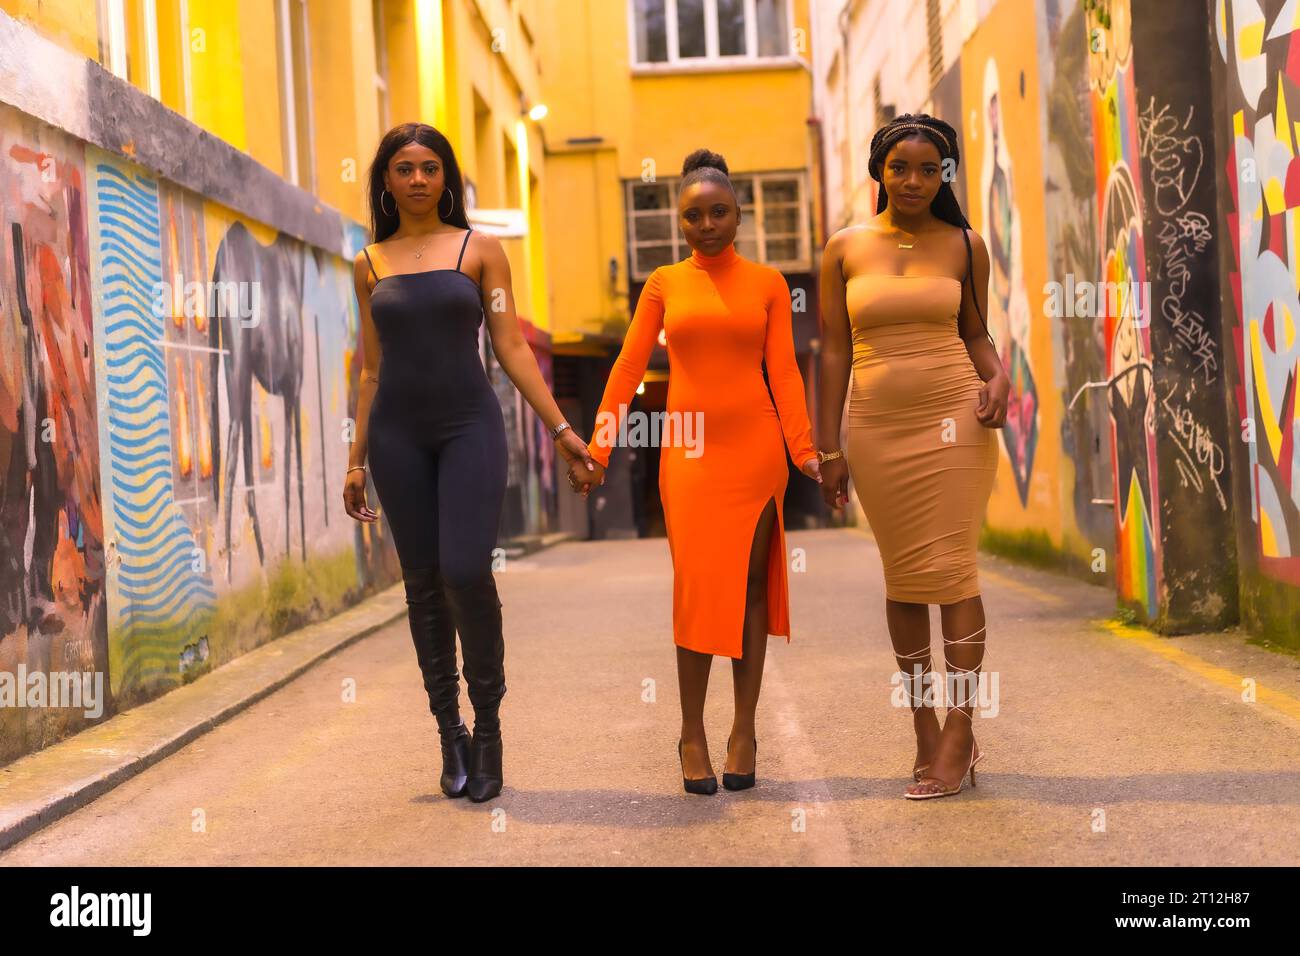 San Sebastian, Gipuzkoa Spanien, Februar 2021: Mode im urbanen Stil mit drei schwarzen afrikanischen Mädchen auf einer Stadtstraße Stockfoto